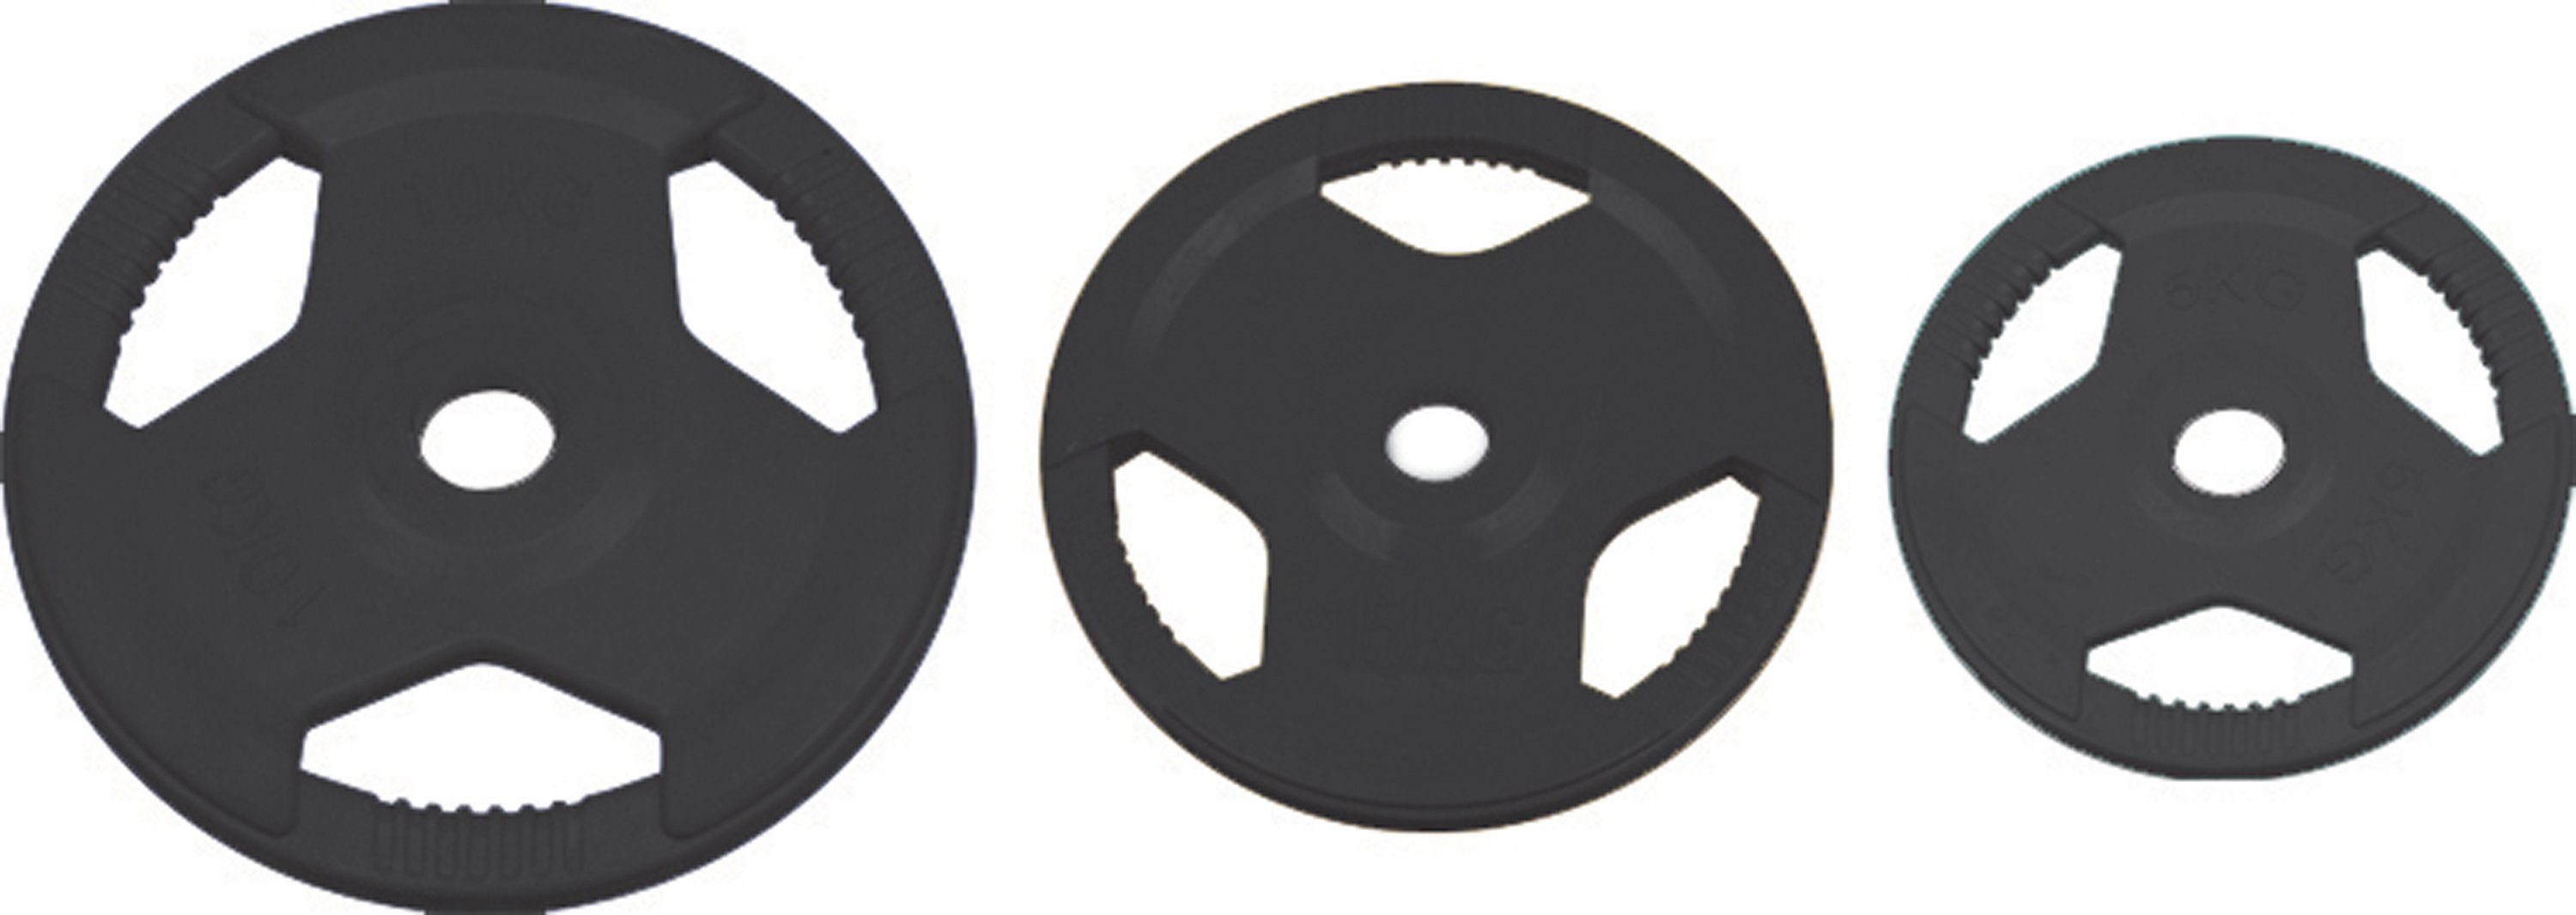 Disque Olympique caoutchouc noir 10 kg. (REF MS-609618)